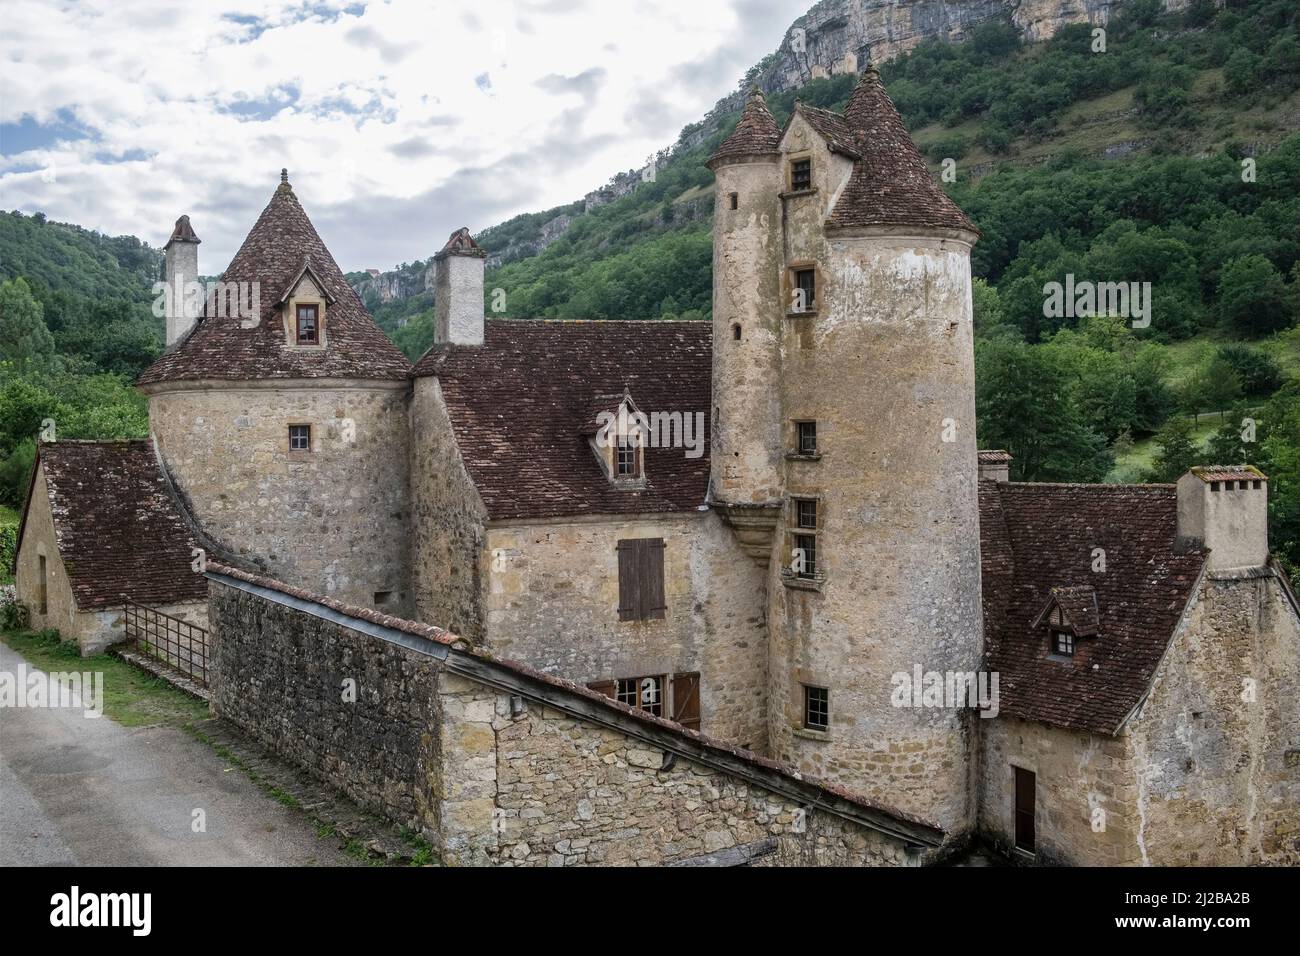 Autoire (Francia meridionale): Castello di Limargue. Villaggio assegnato l'etichetta ÒLes più beaux Villages de FranceÓ (i villaggi più belli in Francia) Foto Stock